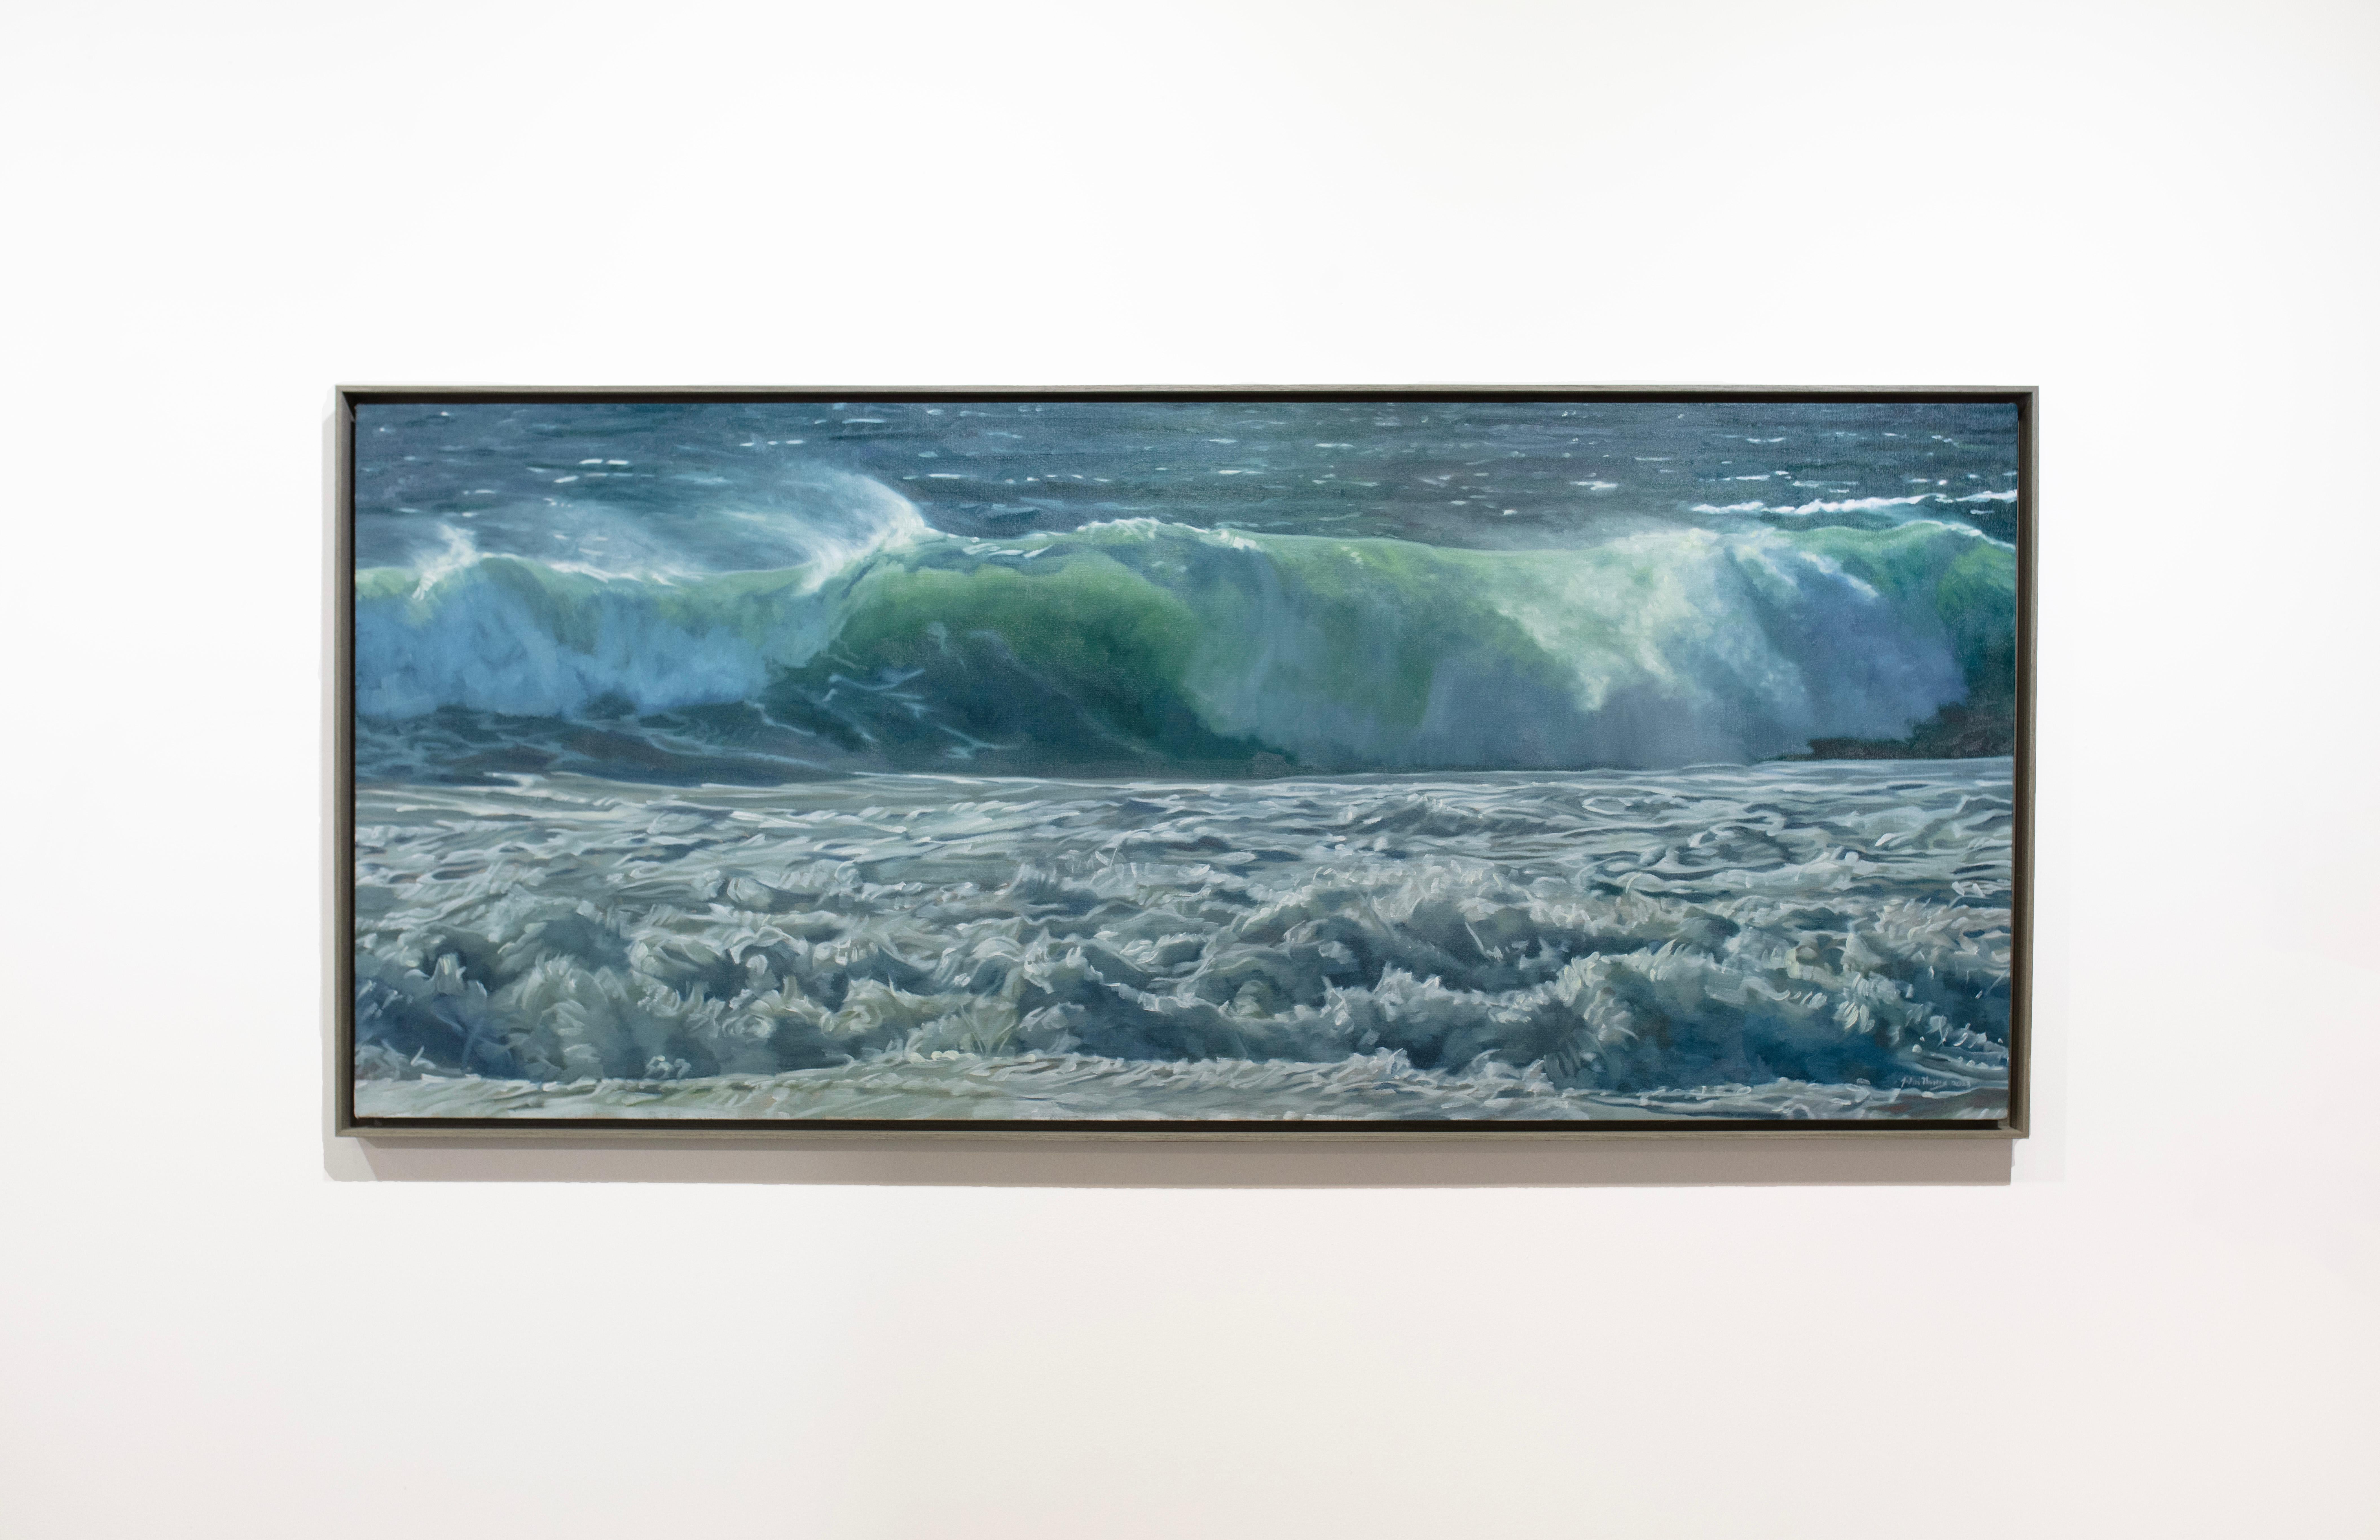 Landscape Painting John Harris (painter) - "Curler 2" Peinture à l'huile naturaliste des vagues océaniques